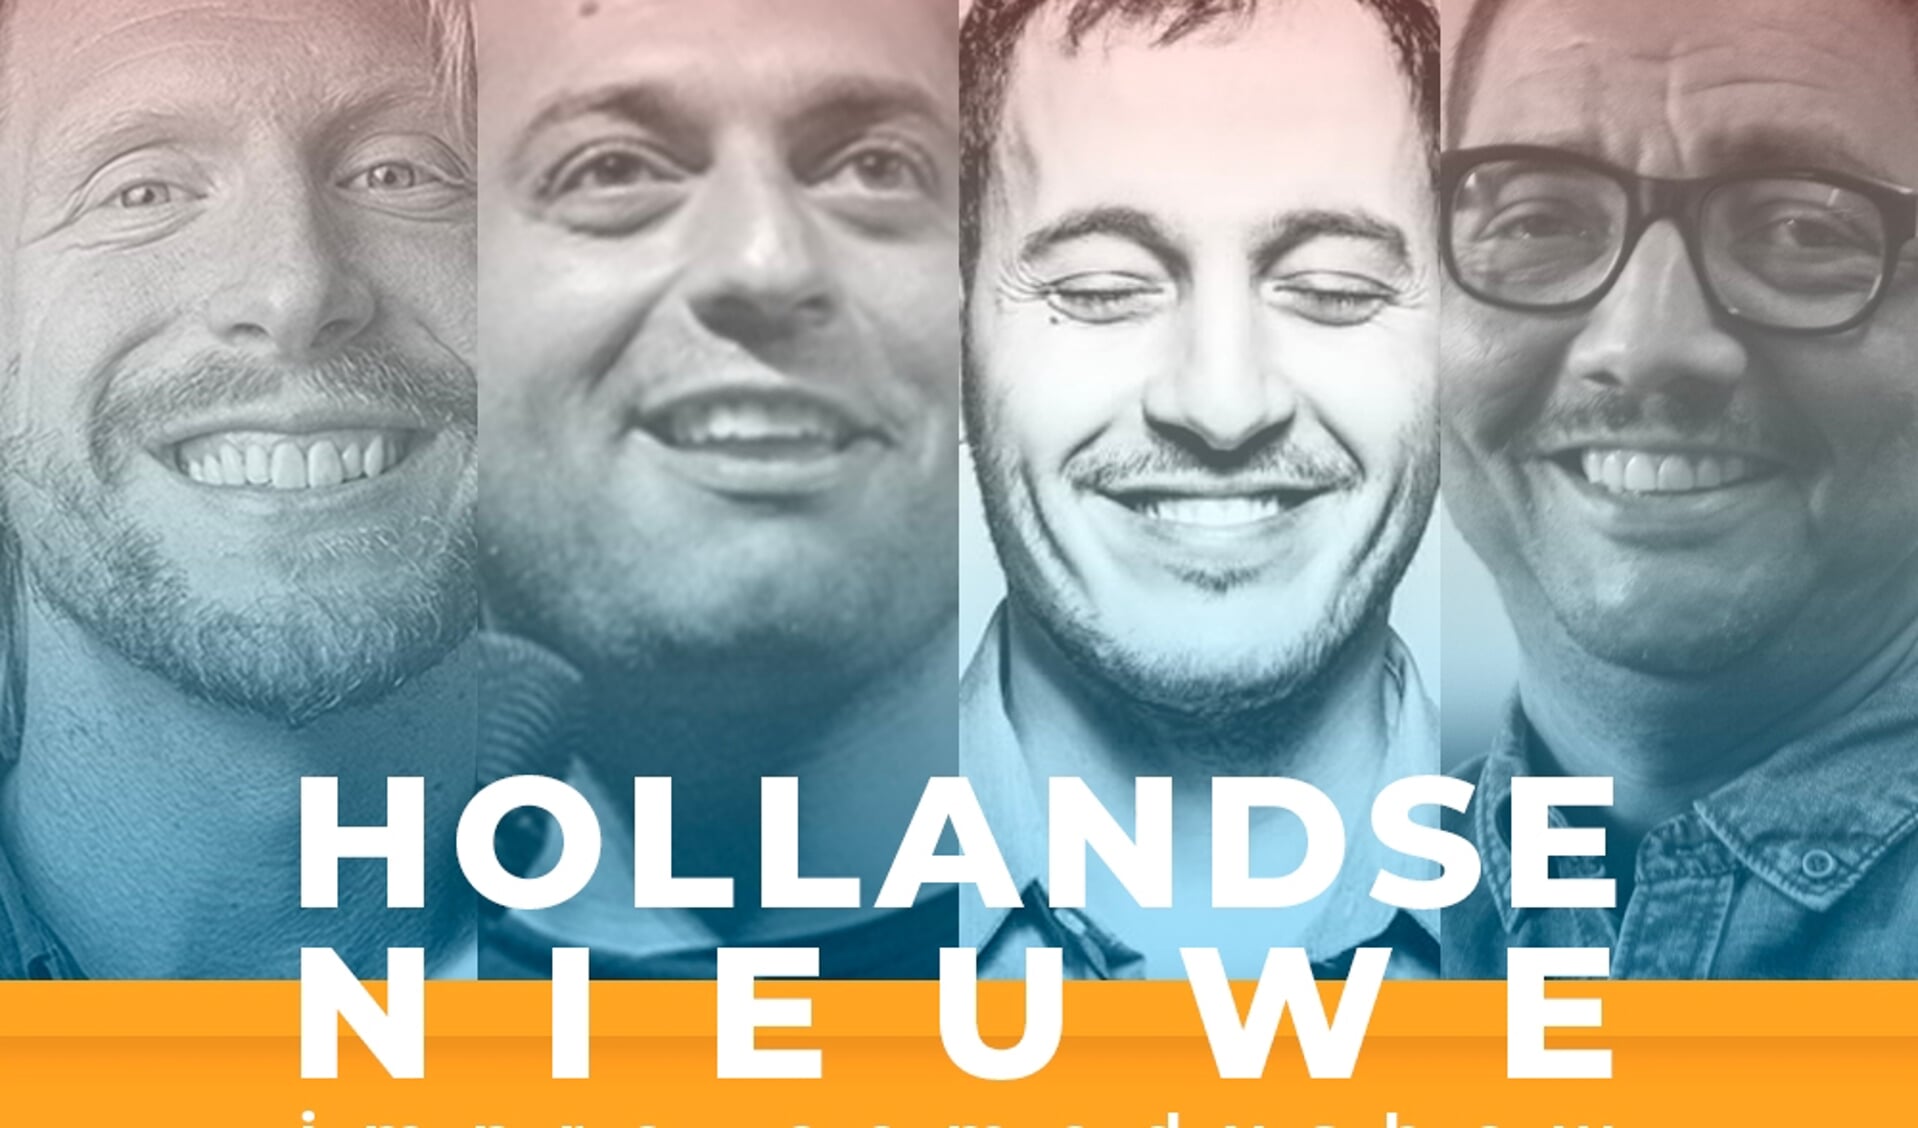 Ontdek nieuw Nederlands en Vlaams talent tijdens de improvisatie-comedyshow 'Hollandse Nieuwe'.